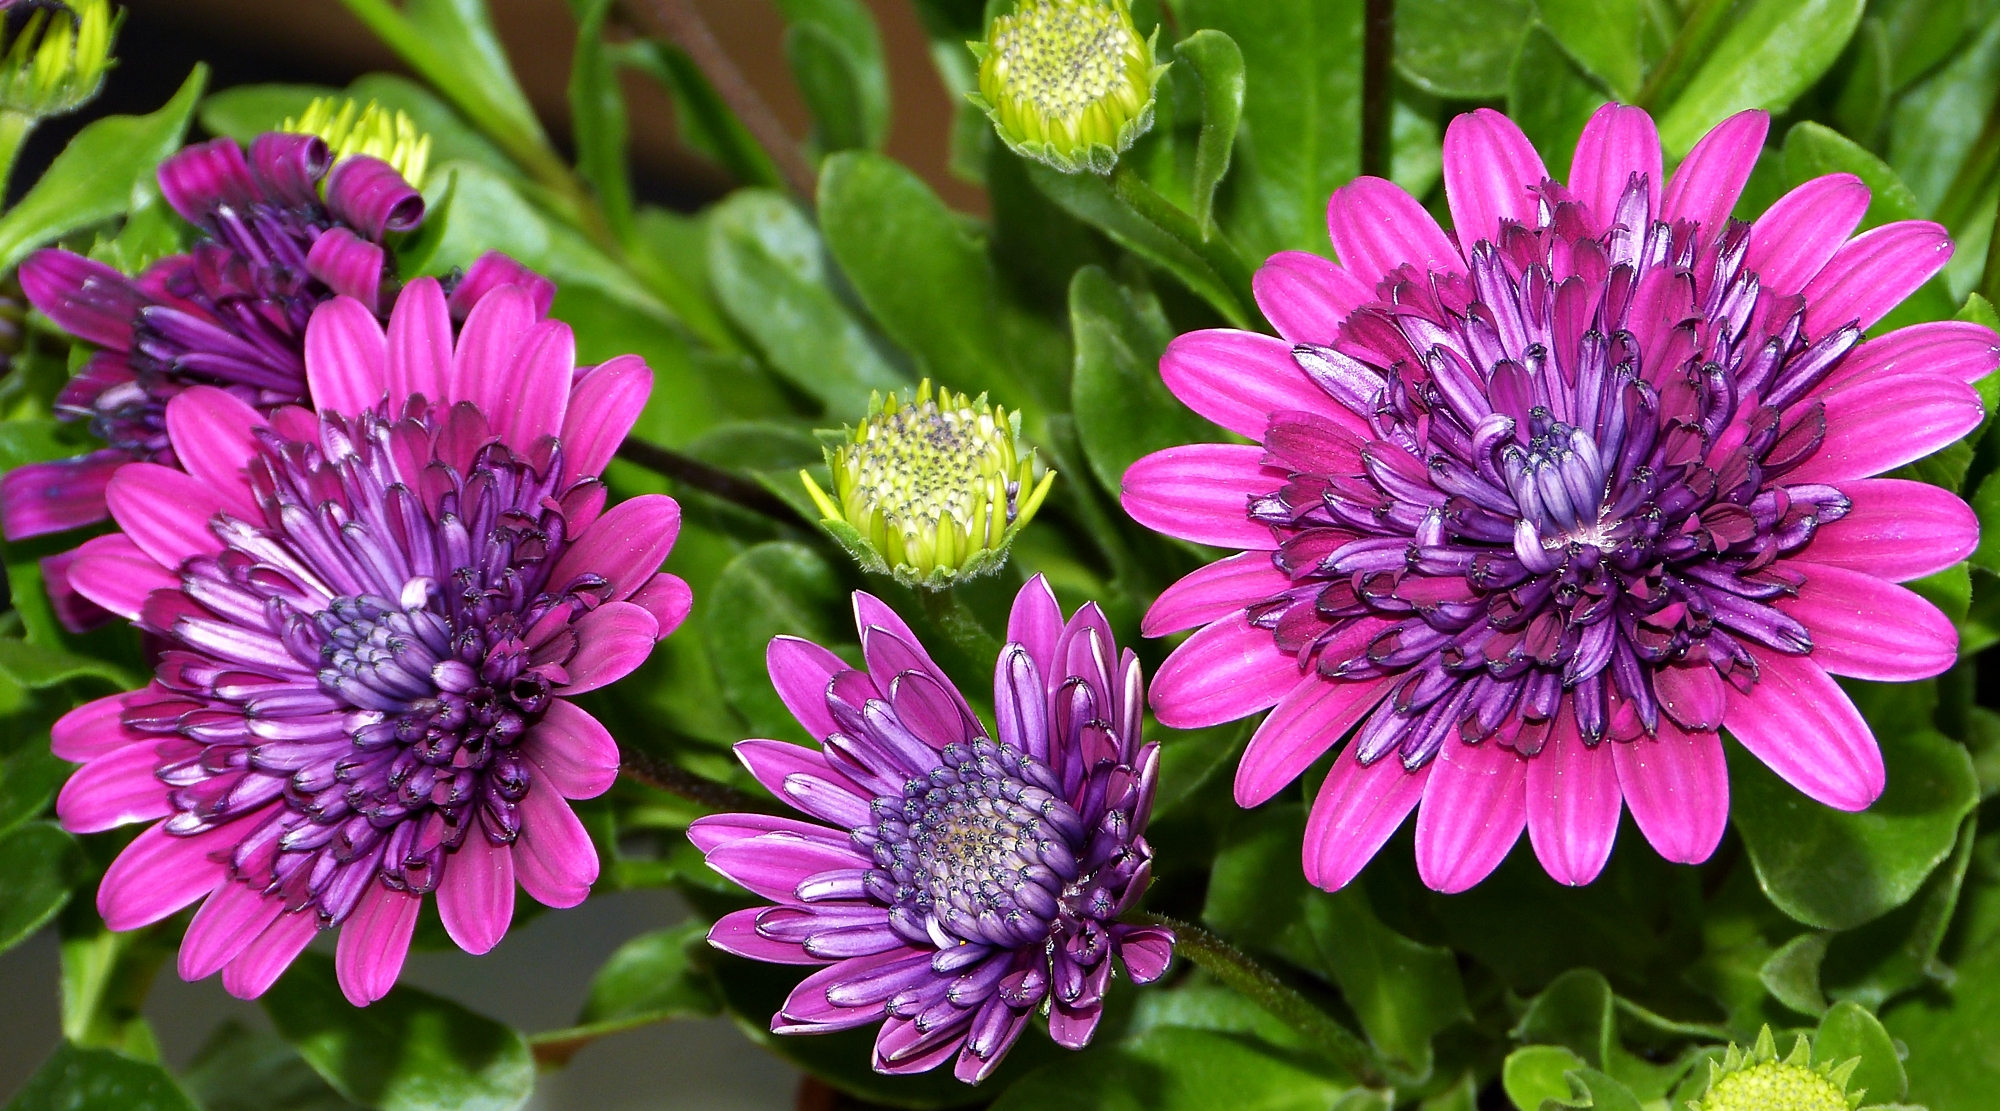 Free download wallpaper Flowers, Flower, Leaf, Earth, Purple Flower on your PC desktop